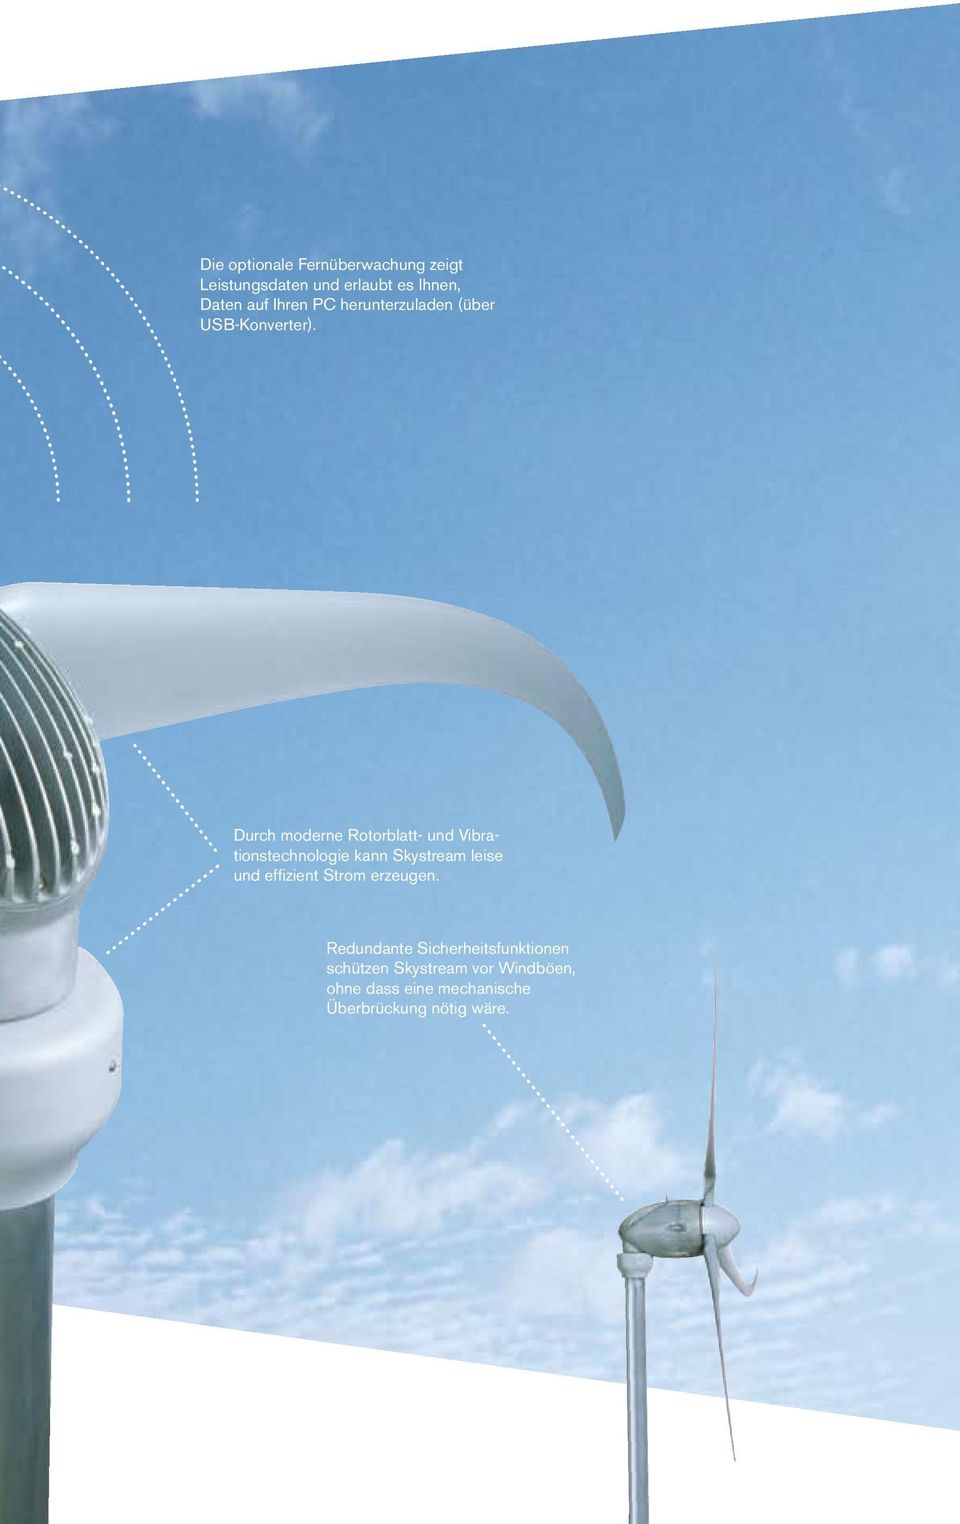 Durch moderne Rotorblatt- und Vibrationstechnologie kann Skystream leise und effizient